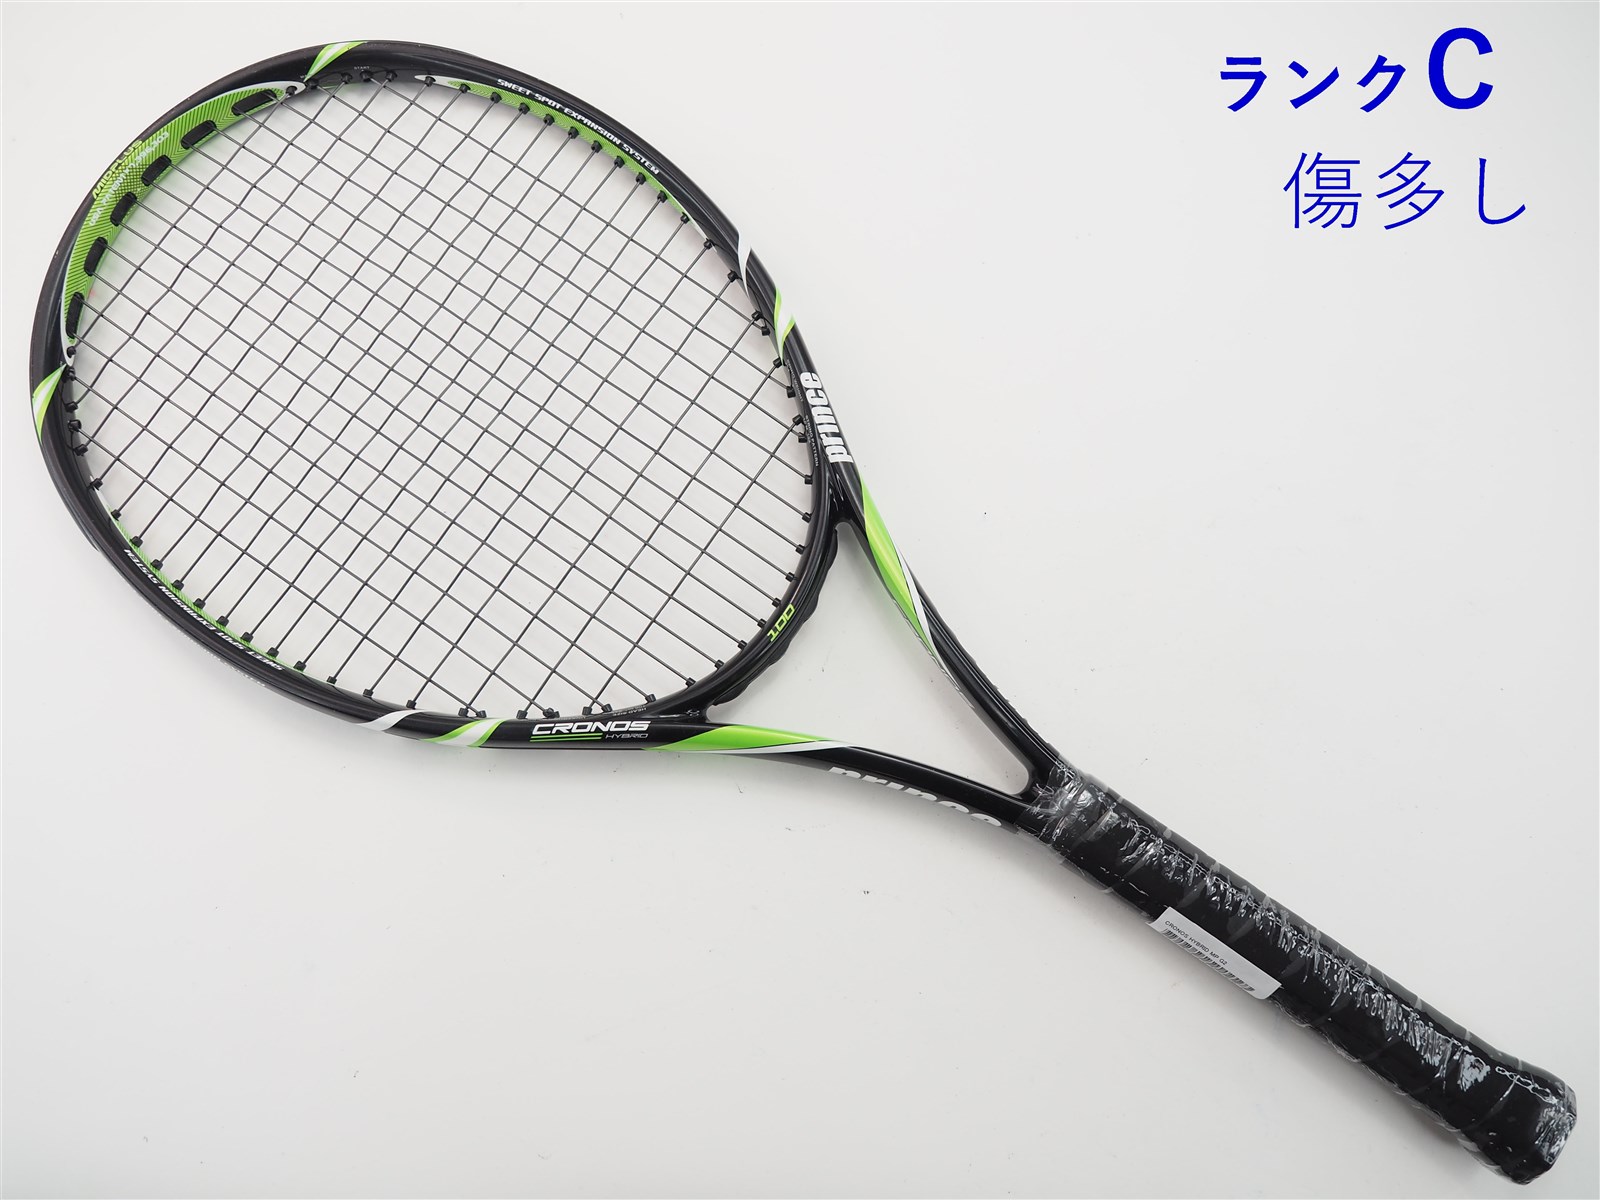 【未使用】プリンス HYB CRONOS L100MG 硬式テニス ラケット ハイブリッド クロノス G1 7TJ060ラケット